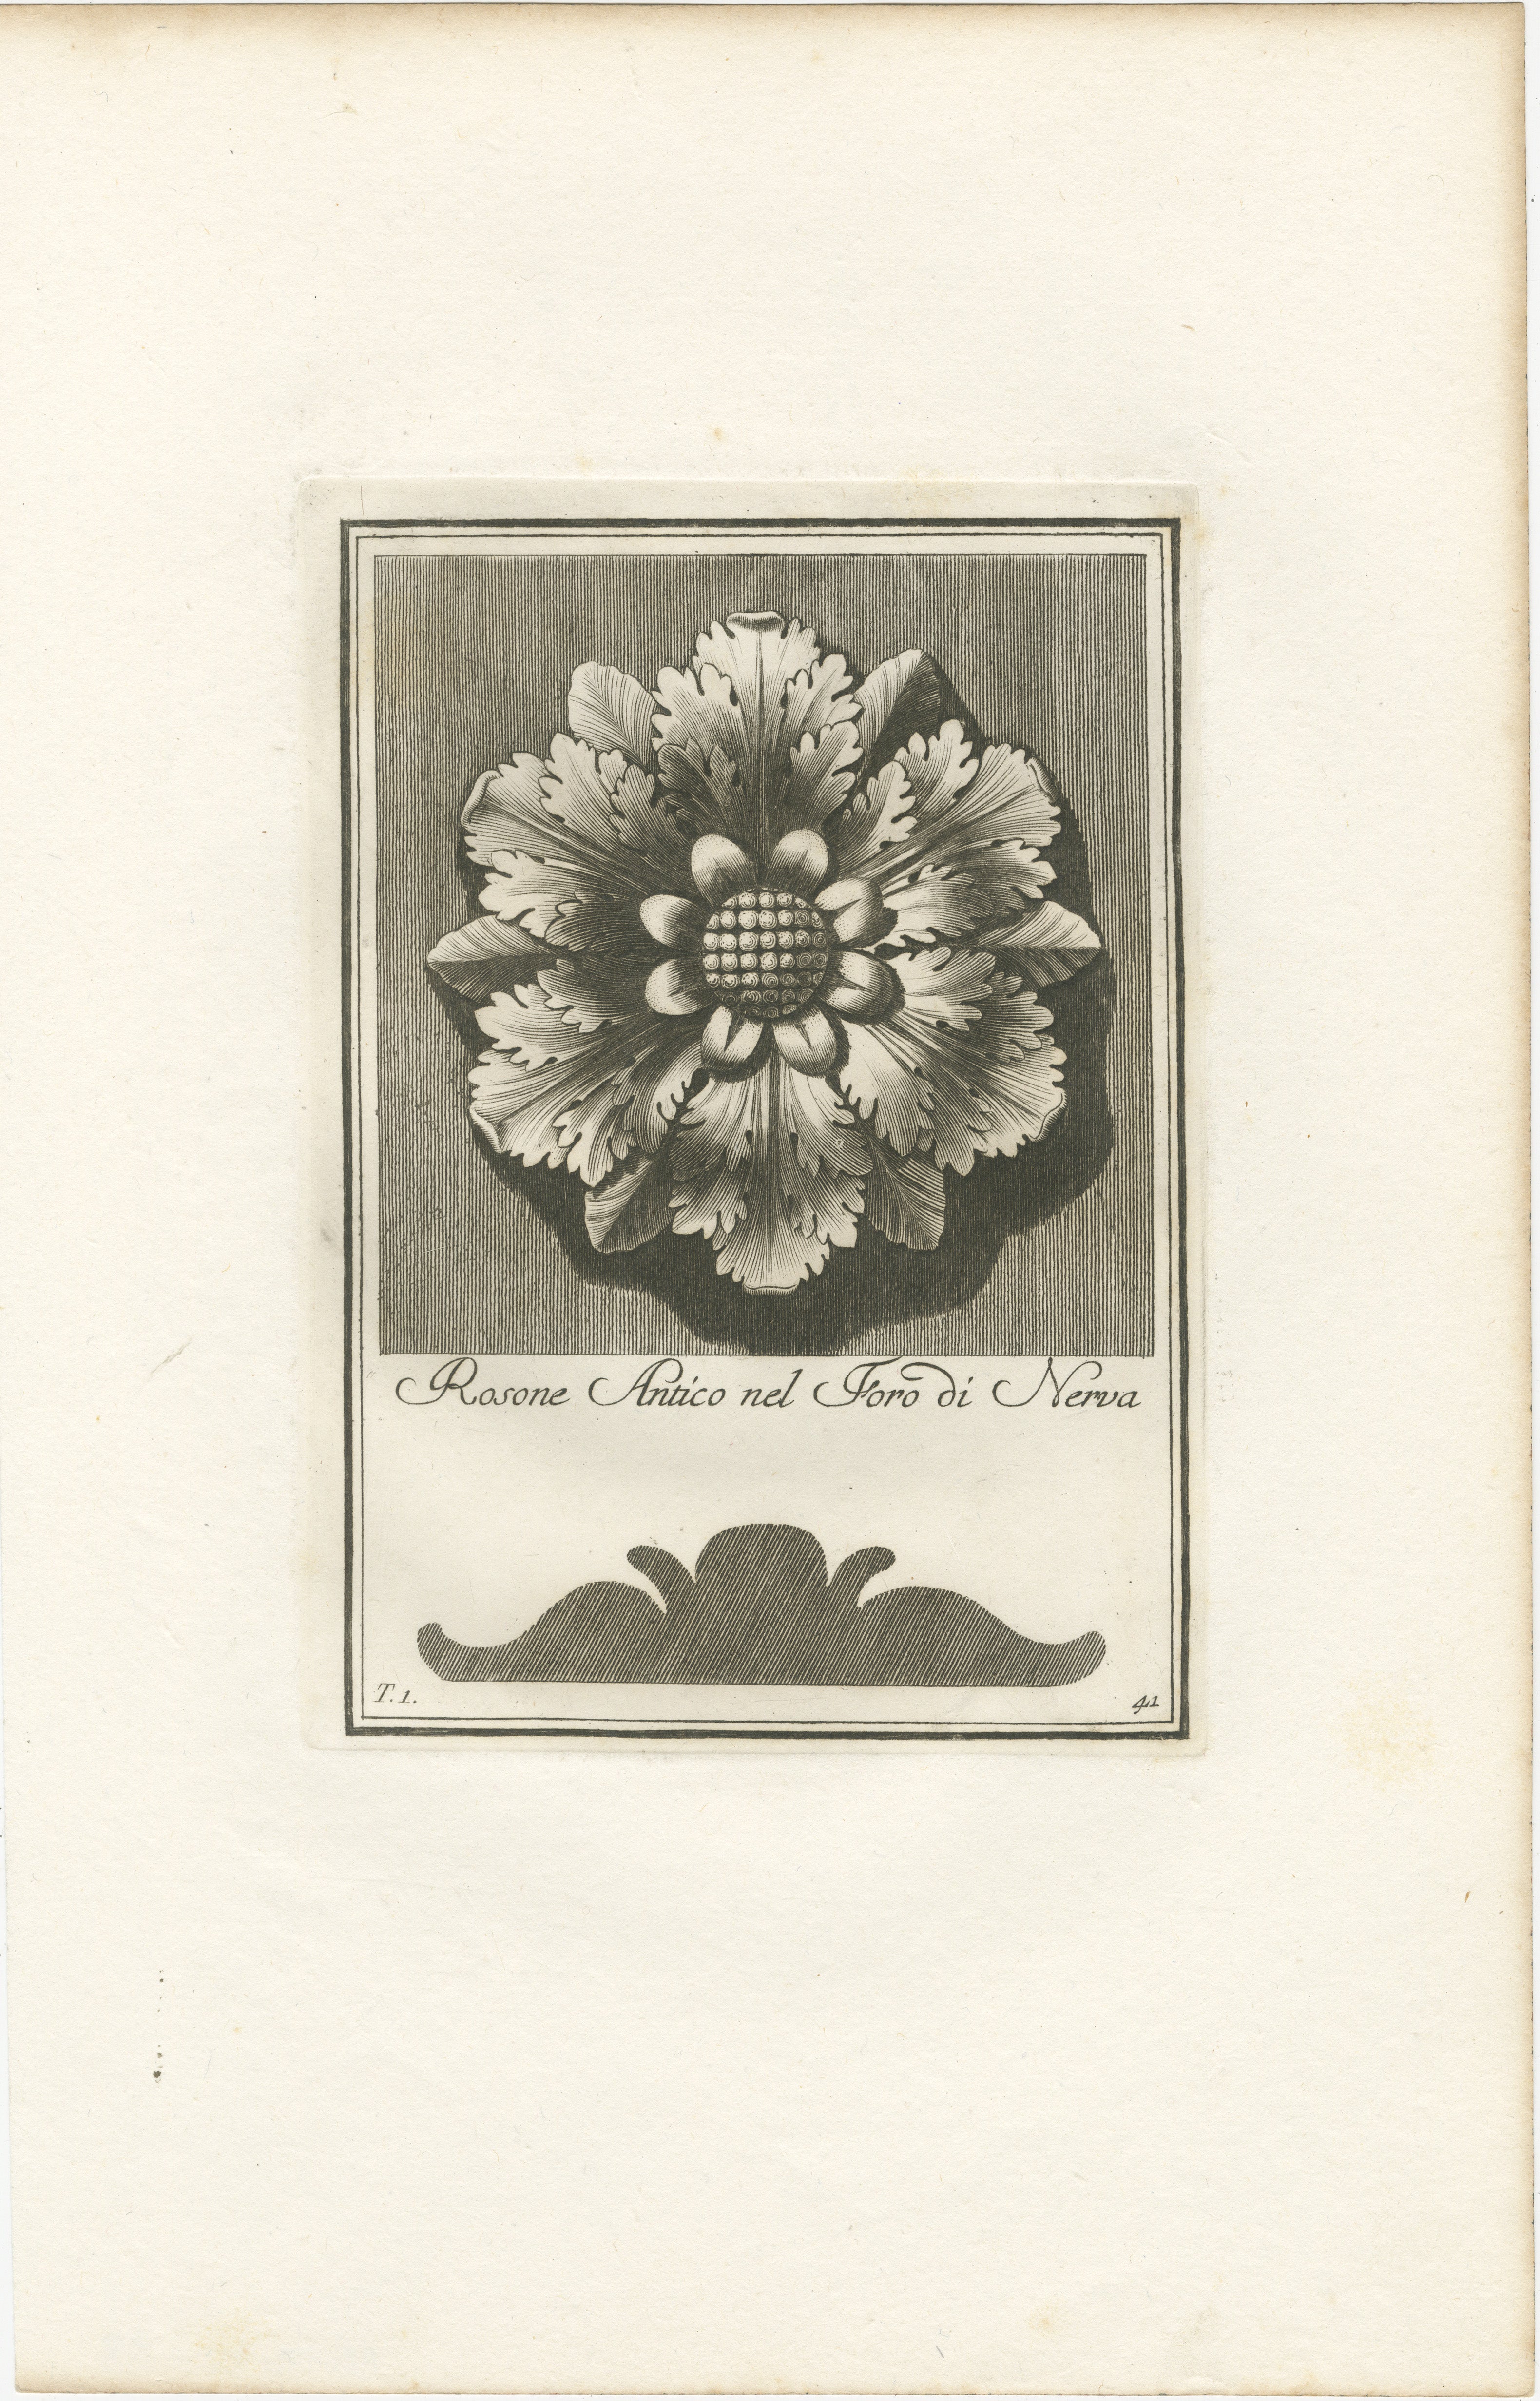 Un bel exemple de gravure botanique du XVIIIe siècle. Créée par Carlo Antonini entre 1777 et 1790, elle présente une représentation détaillée d'une fleur en plein épanouissement. L'illustration est très détaillée, les pétales, les étamines et les